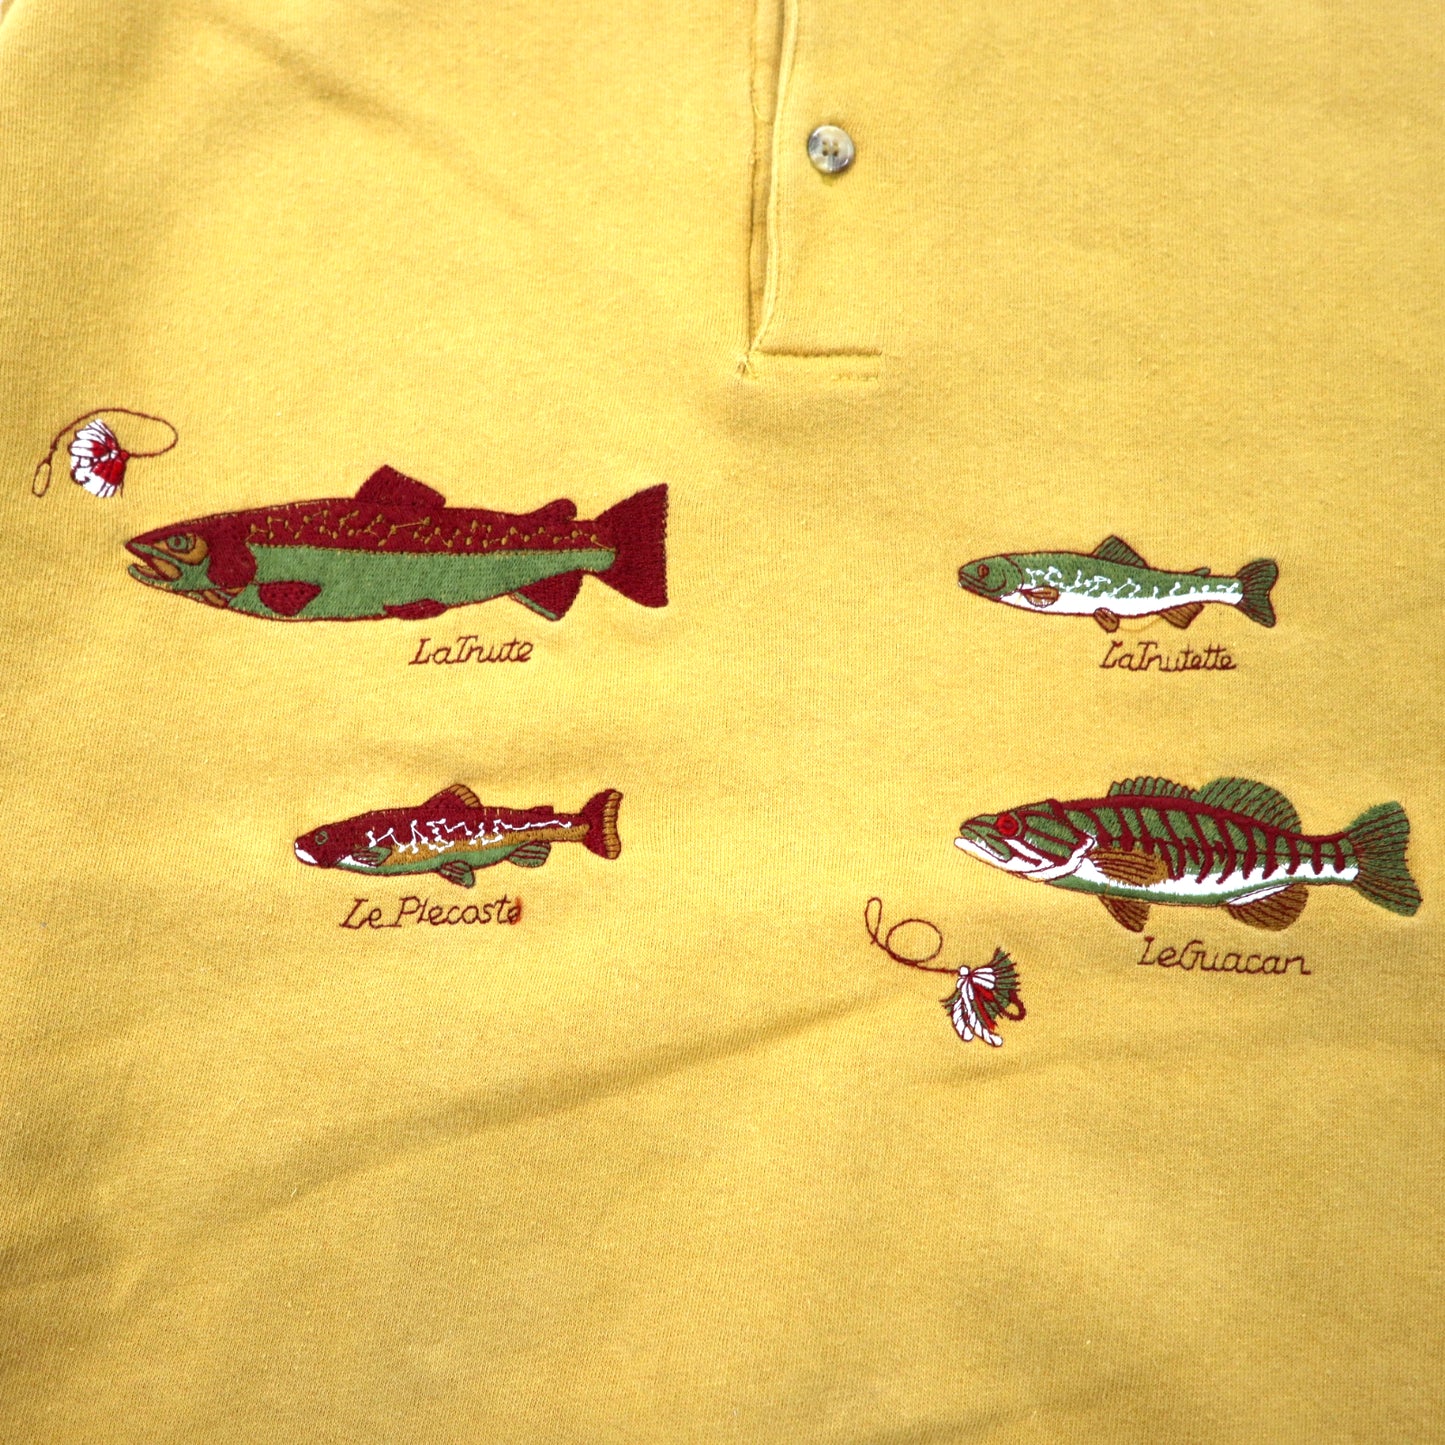 EMBASSY ROW 90年代 レトロ ポロスウェットシャツ XL ベージュ コットン 裏起毛 魚 フィッシング 刺繍 ビッグサイズ